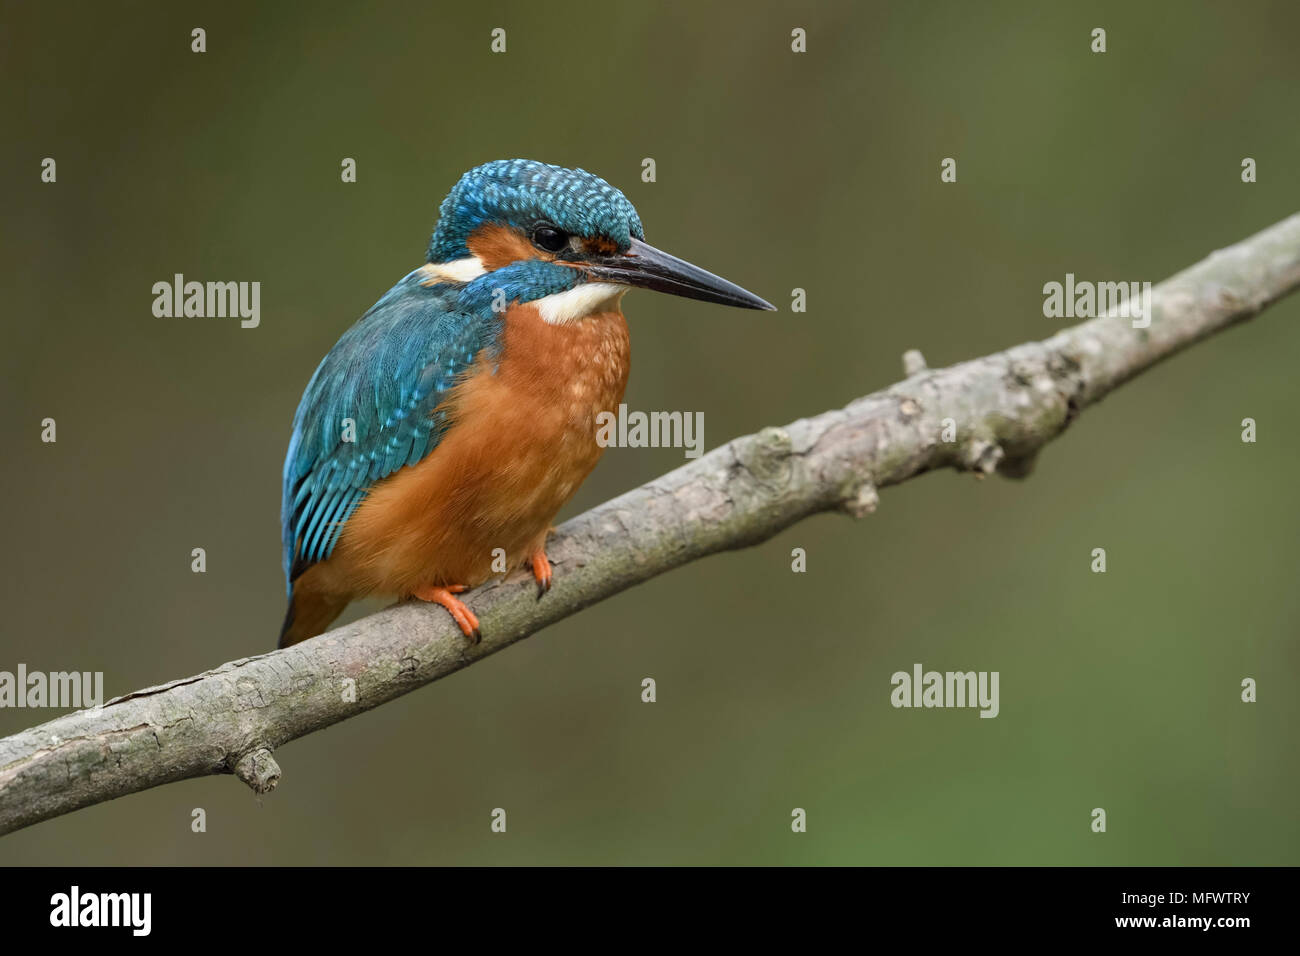 Kingfisher commun / Optimize ( Alcedo atthis ), homme au printemps, perché sur une branche au-dessus de la rivière, le close-up détaillé, de la faune, de l'Europe. Banque D'Images